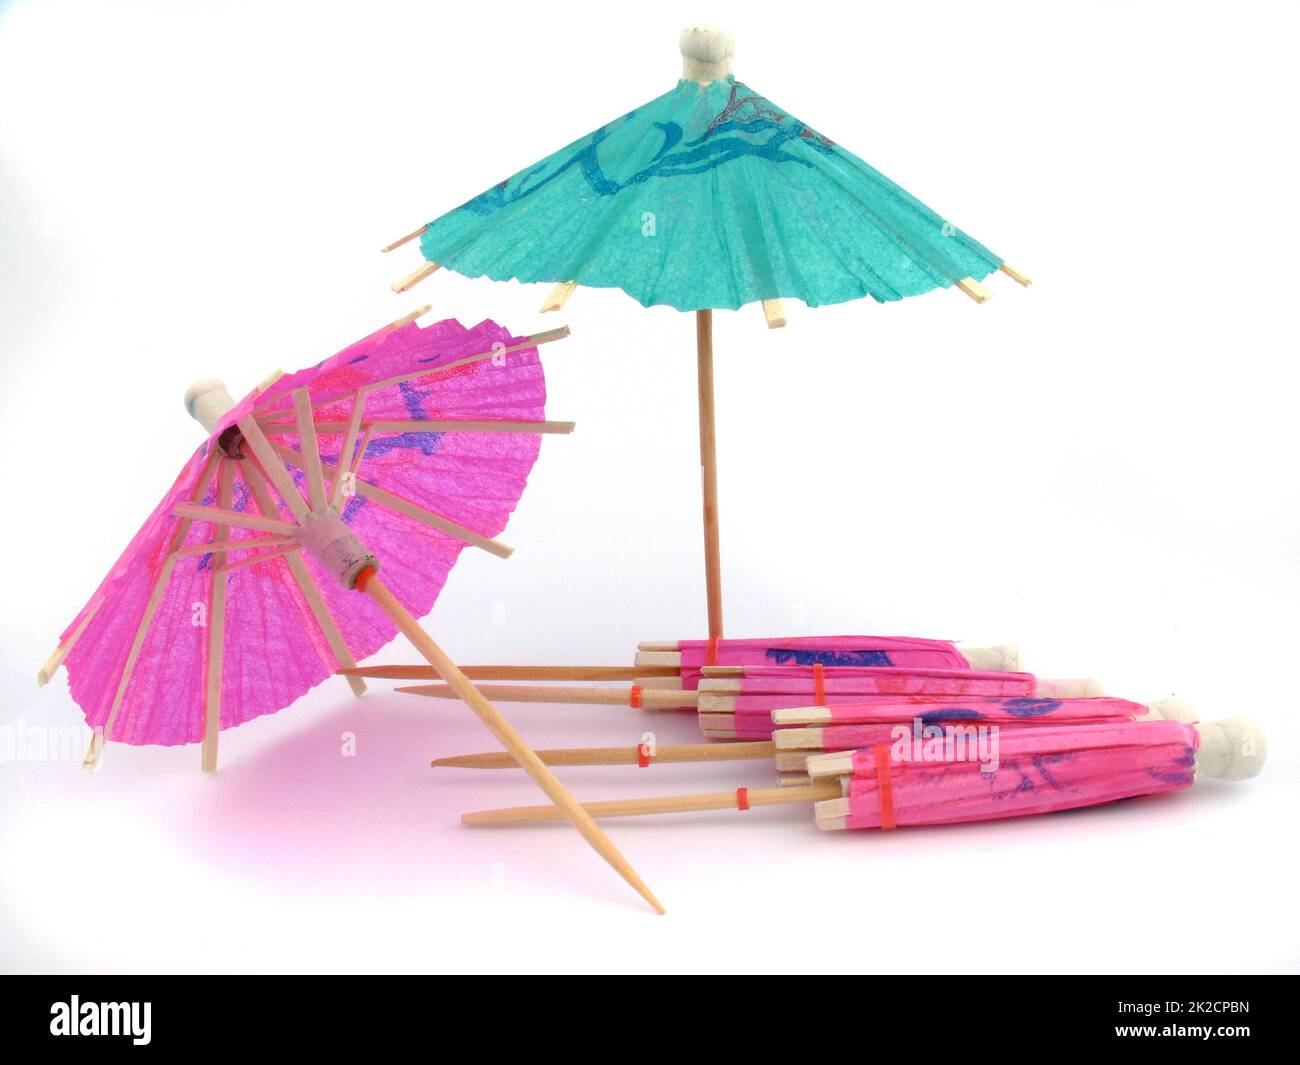 Foto von Regenschirmen, die Urlaub, Freizeit, Strandleben in der Pandemie symbolisieren Stockfoto